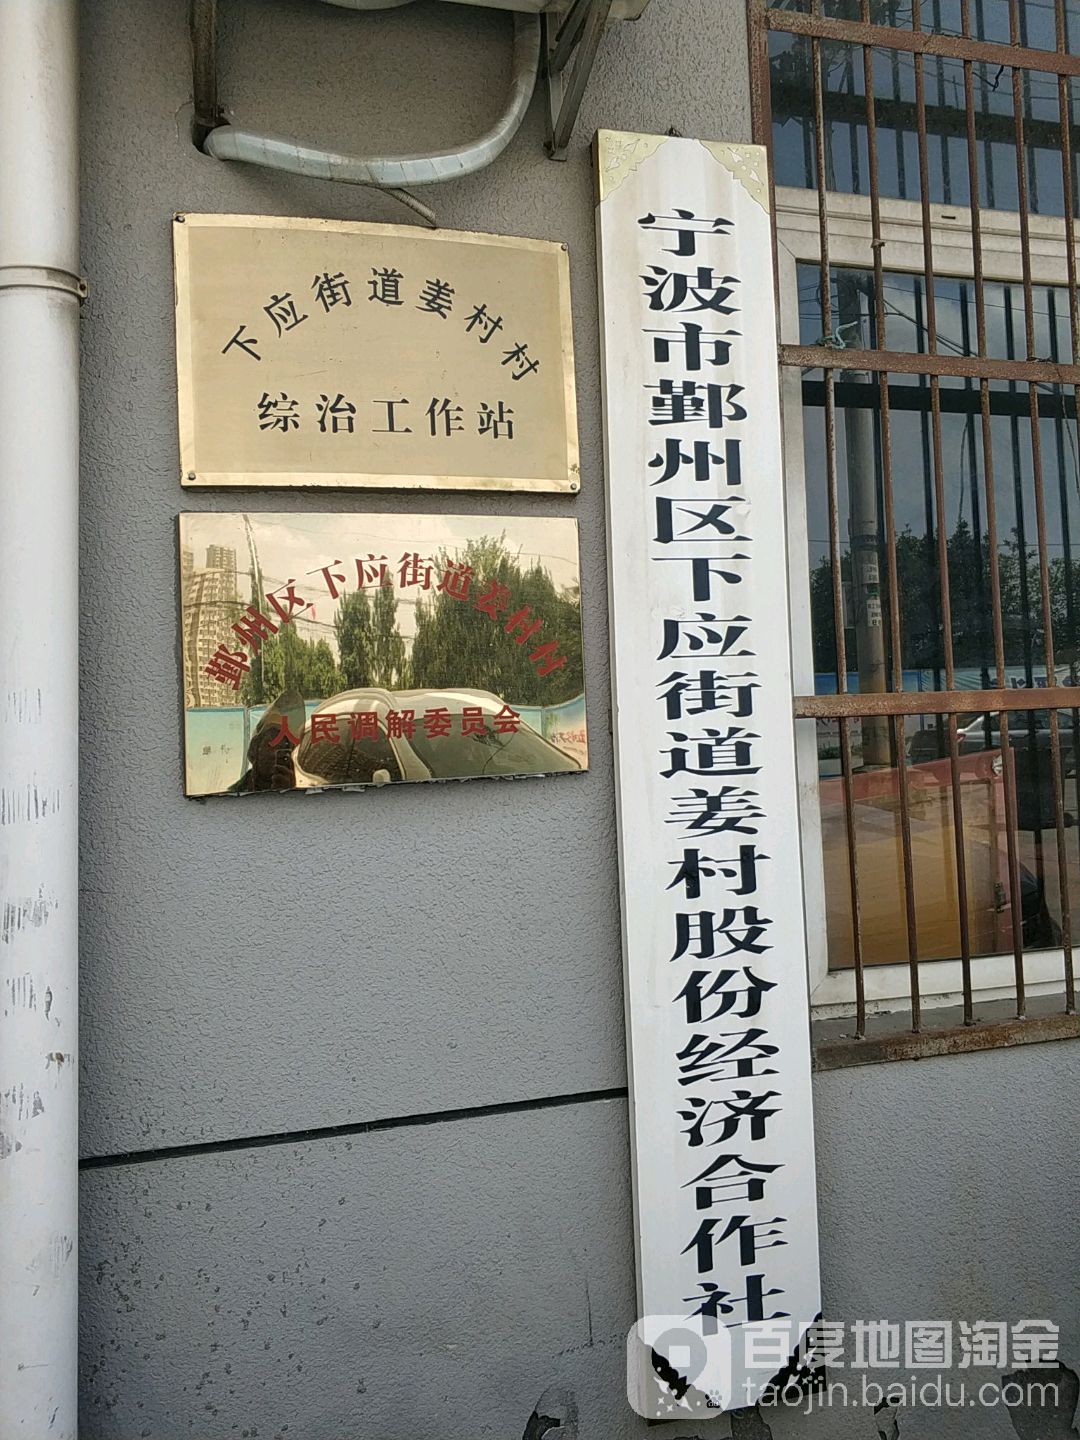 下應街道姜村村綜治工作站